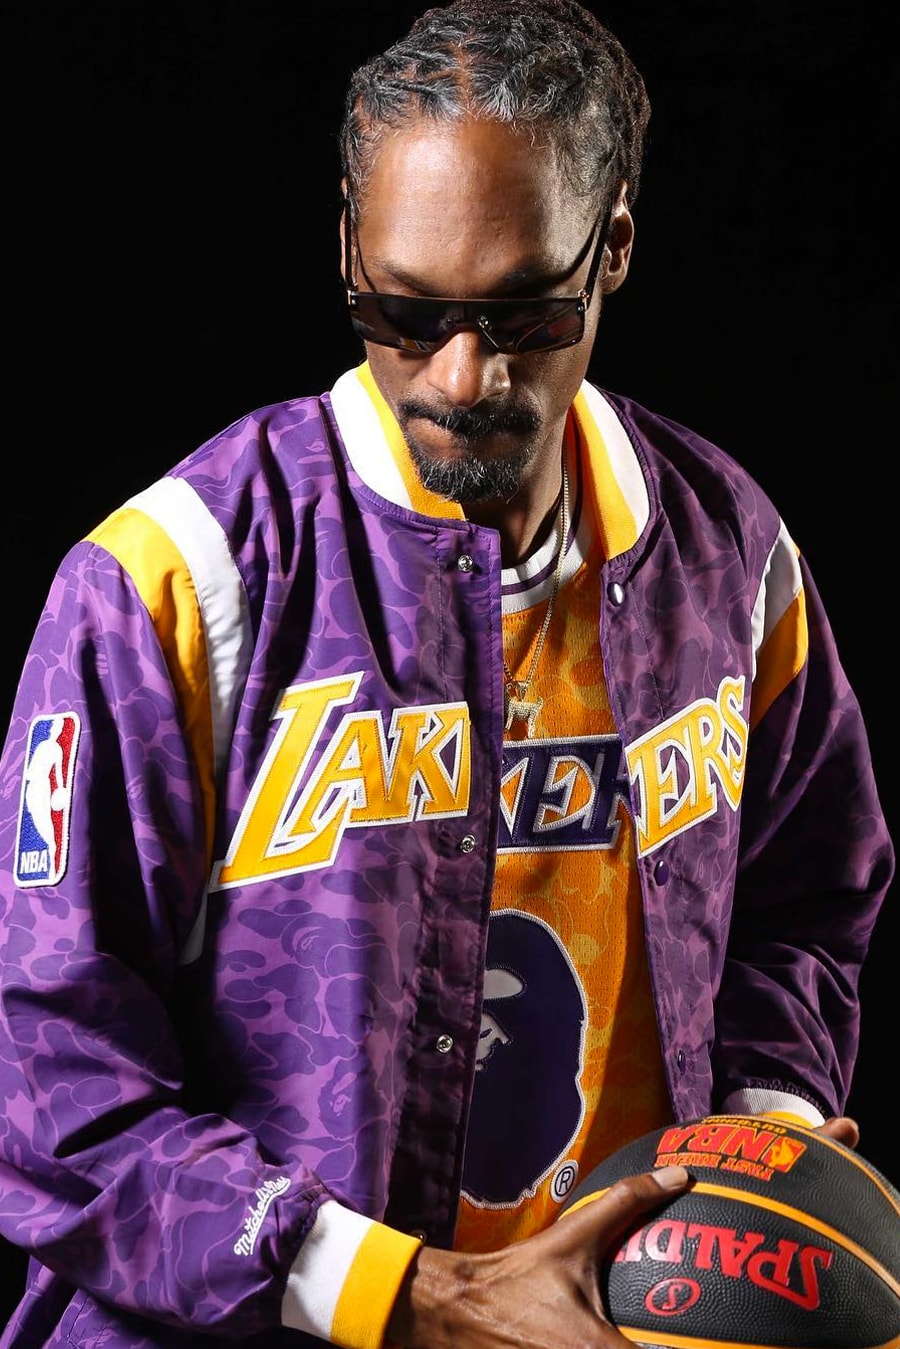 Snoop Dogg 演繹 A BATHING APE® x Mitchell & Ness 聯名系列 Lookbook